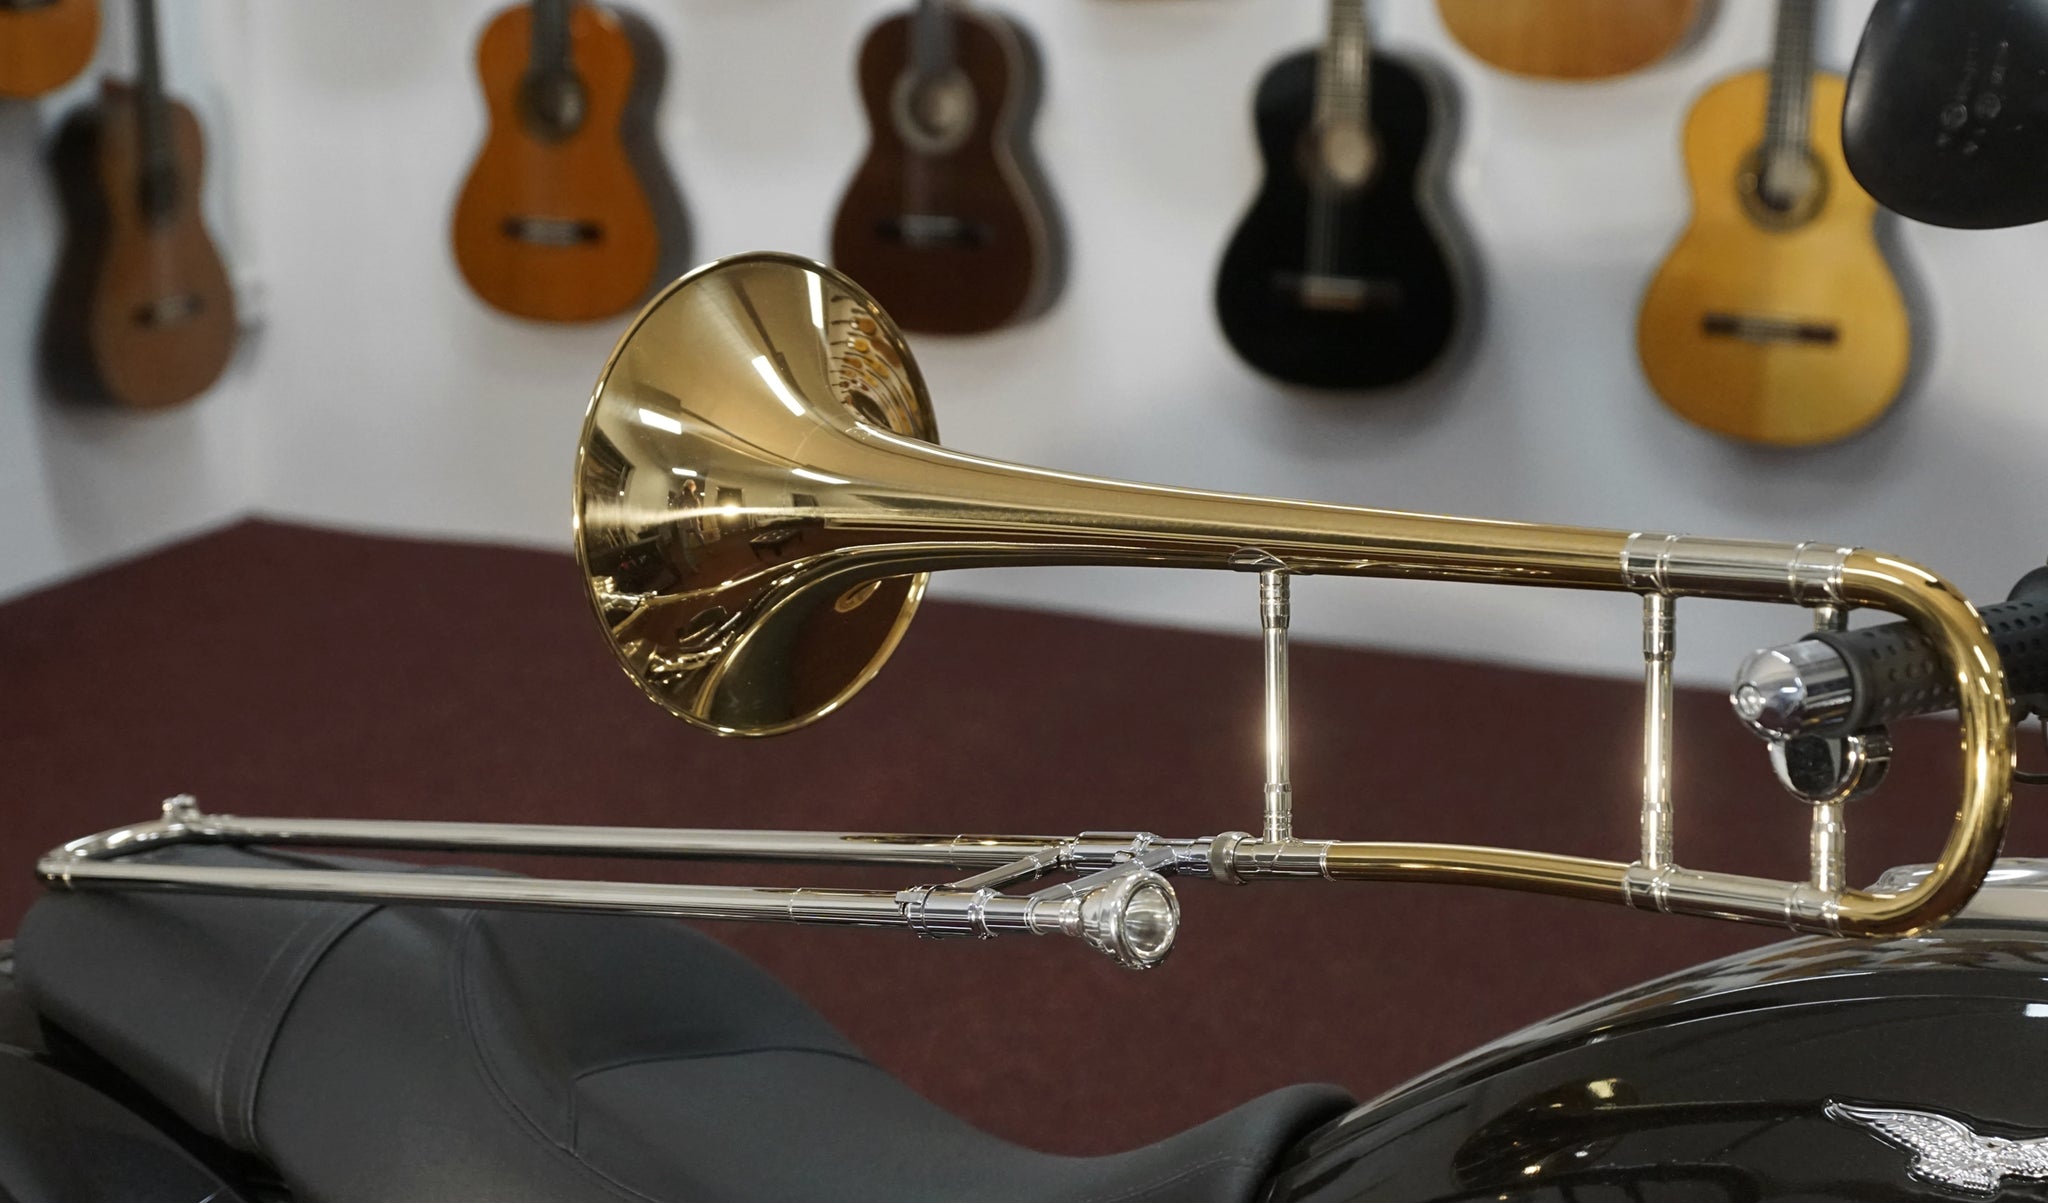 Melton Posaune Trombone In Modell 2239 Rotgold Lackiert Inkl K Musique Favre